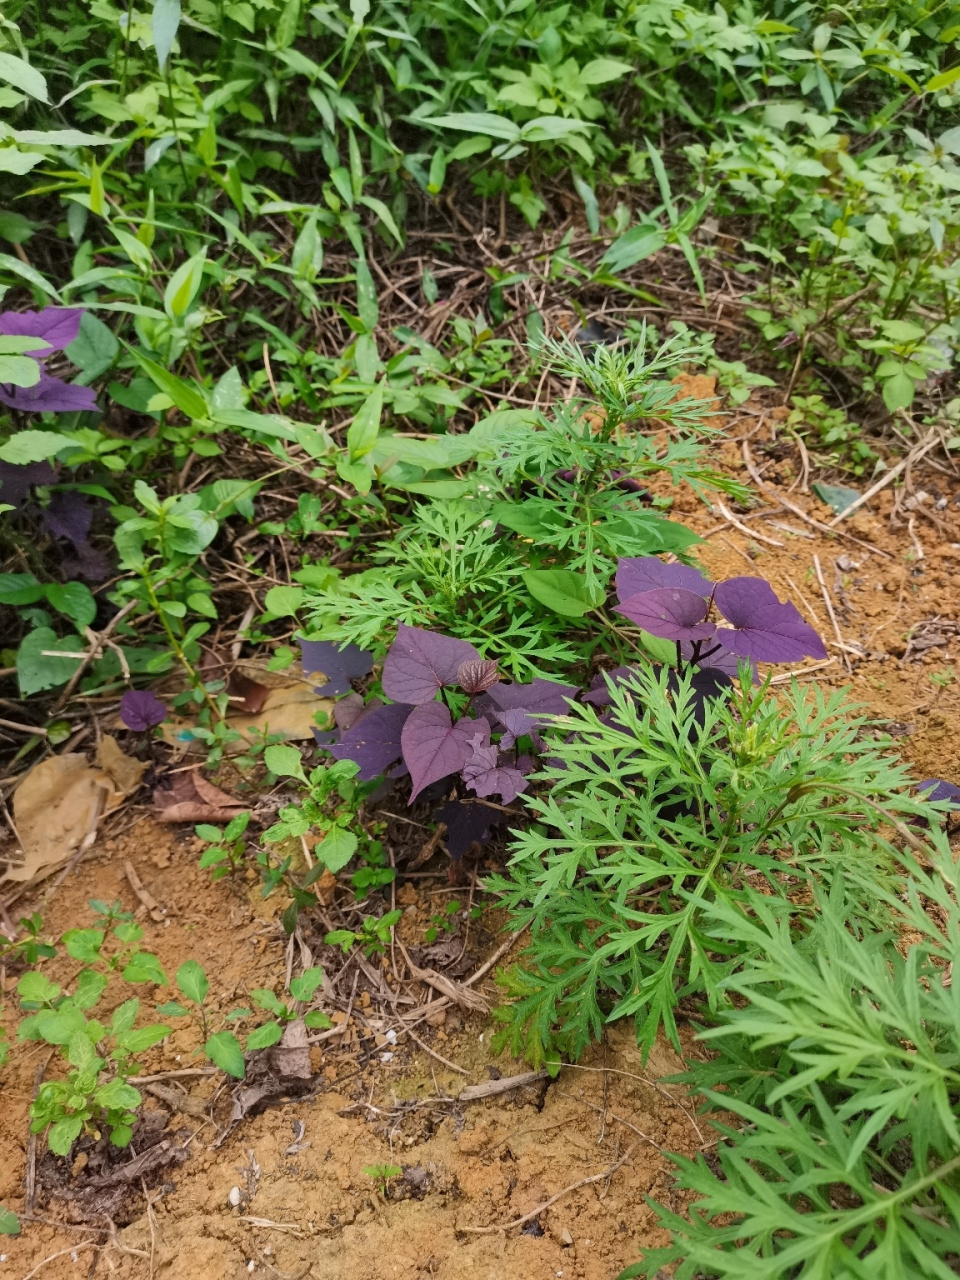 紫薯的叶子真的是紫色的959595 开始我以为是紫苏呢,瞅近了觉得